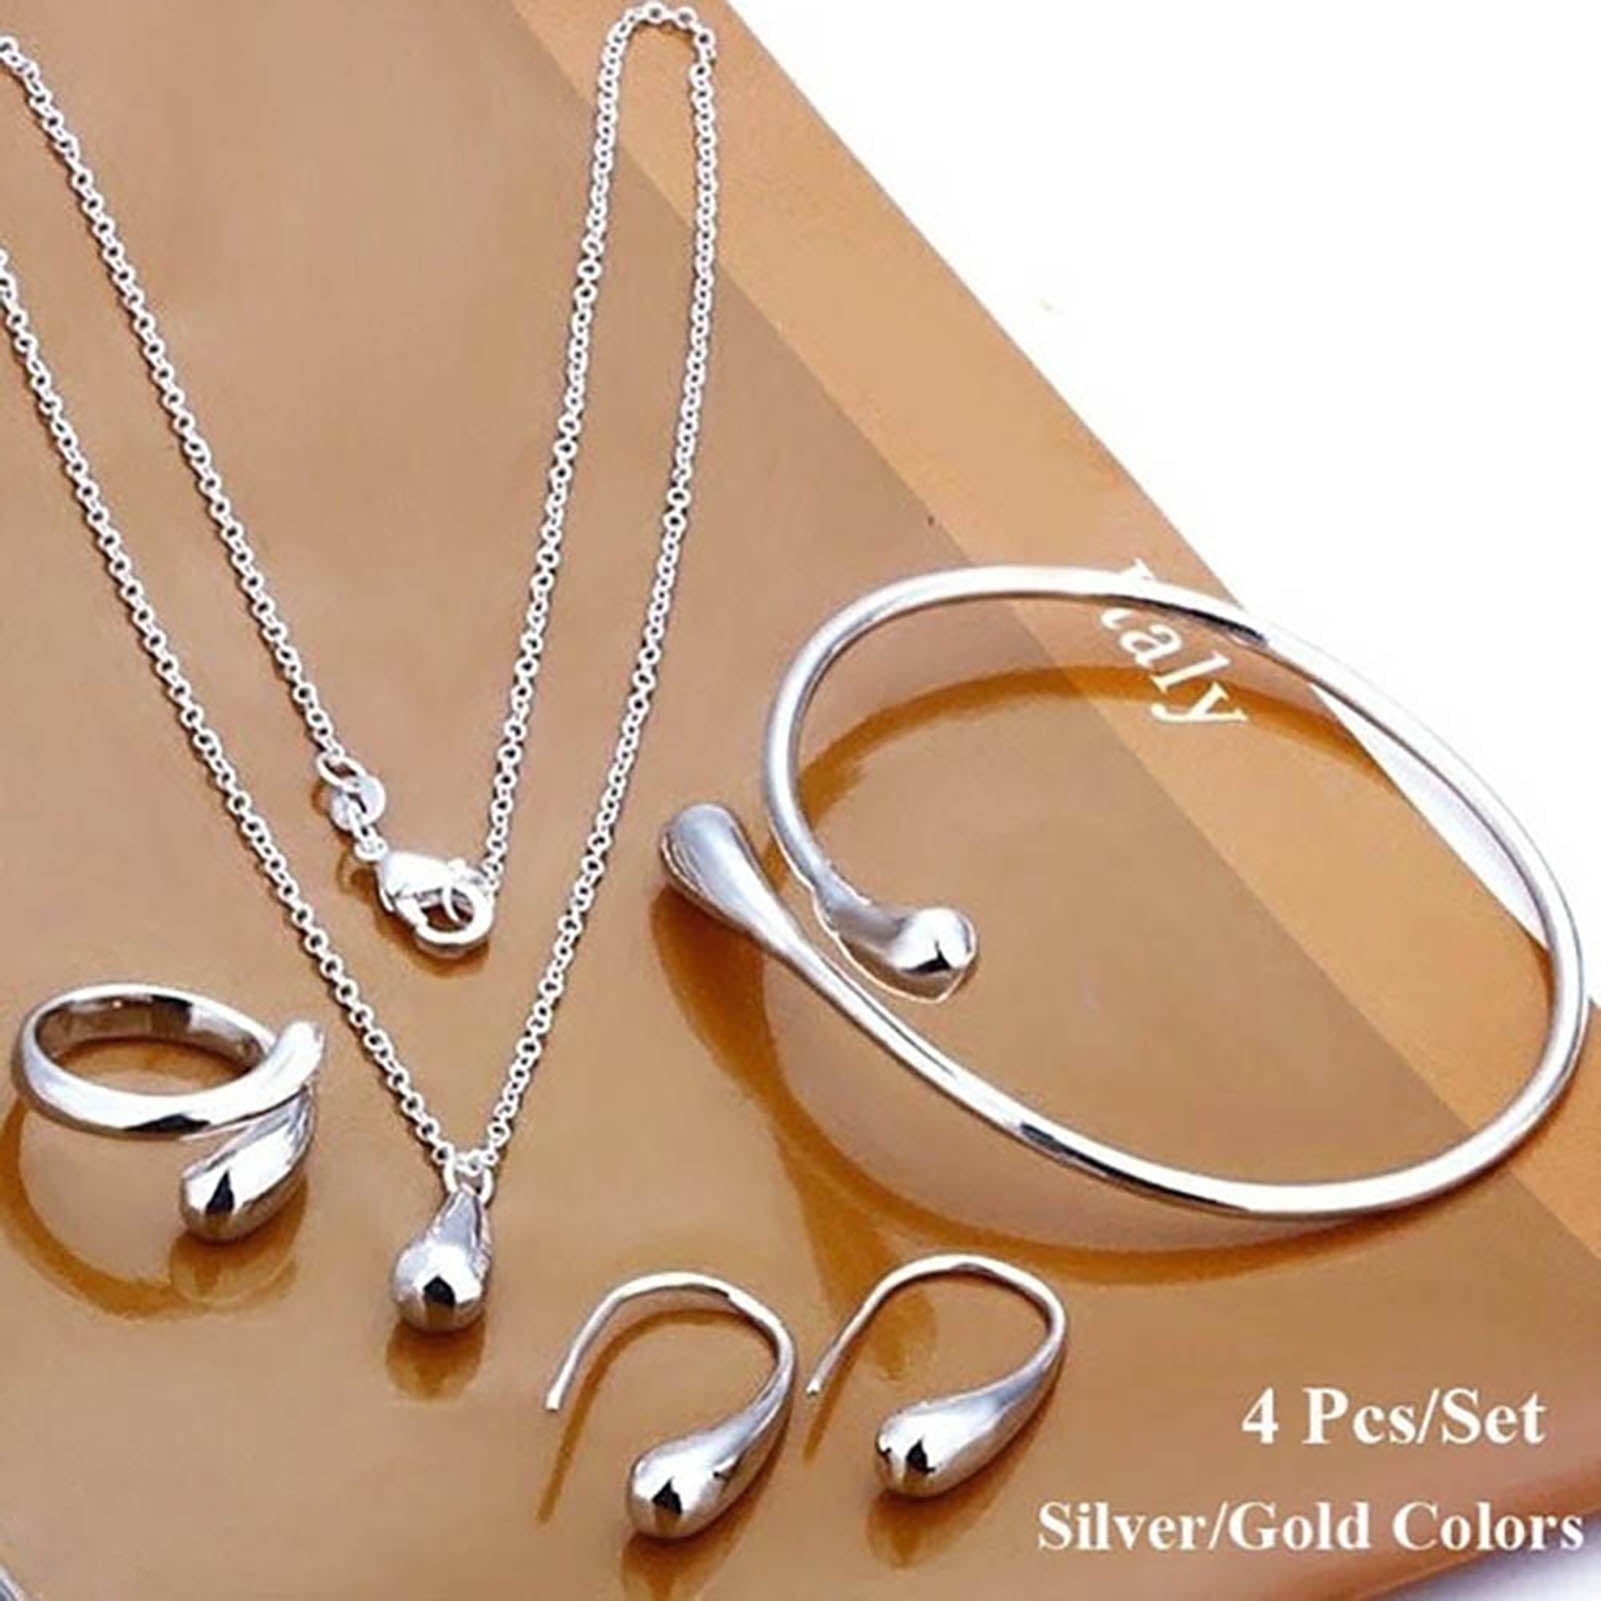 Women's Jewelry, Necklaces, Earrings, Bracelets